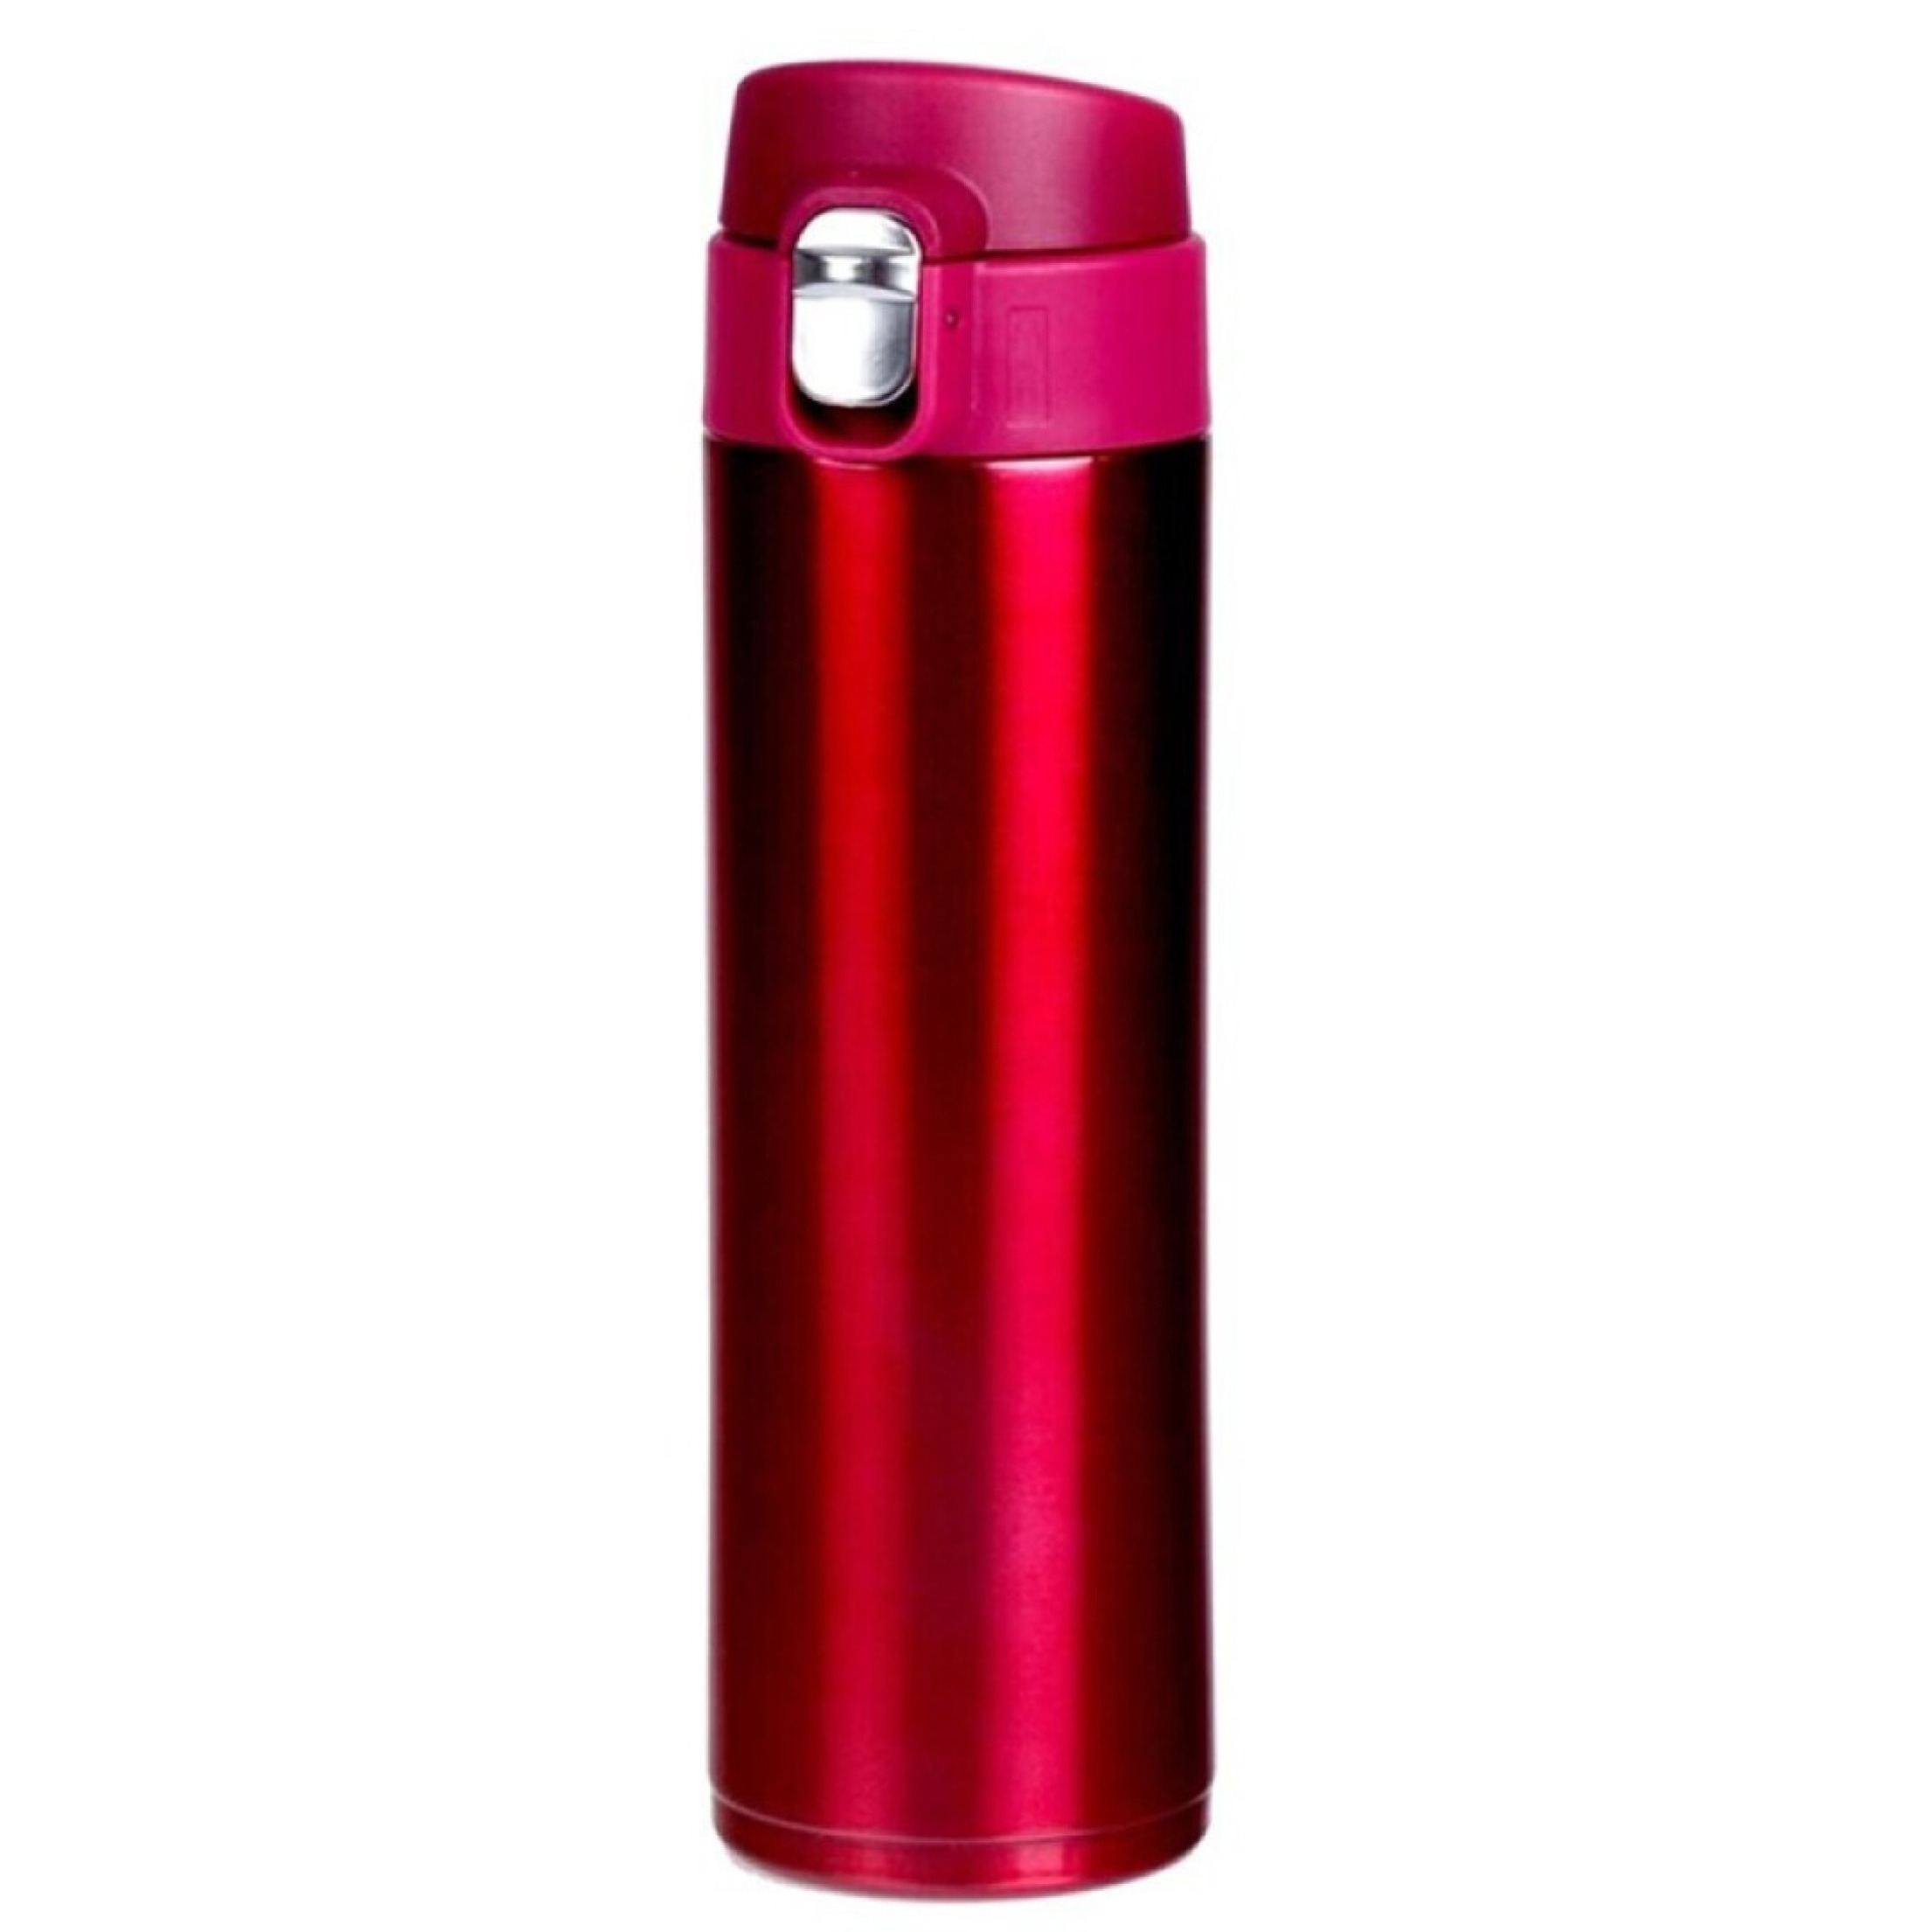 RVS thermosfles-isoleerfles voor onderweg 450 ml fuchsia roze